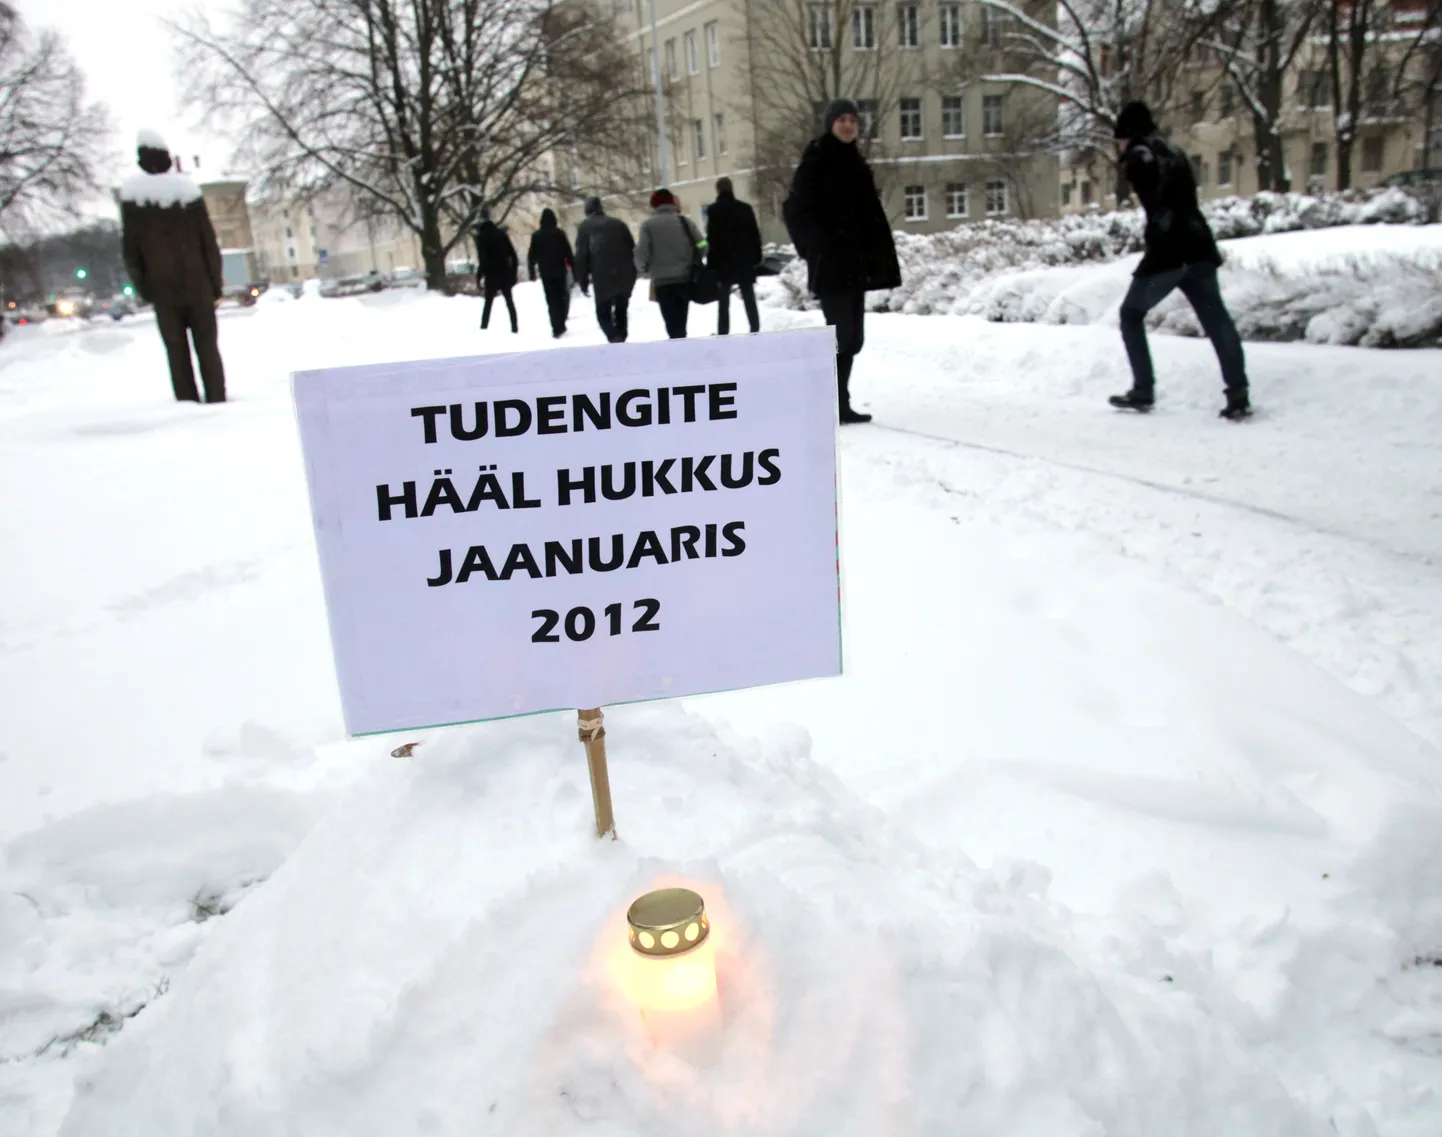 Надпись на плакате: "Голос студентов погиб в январе 2012"